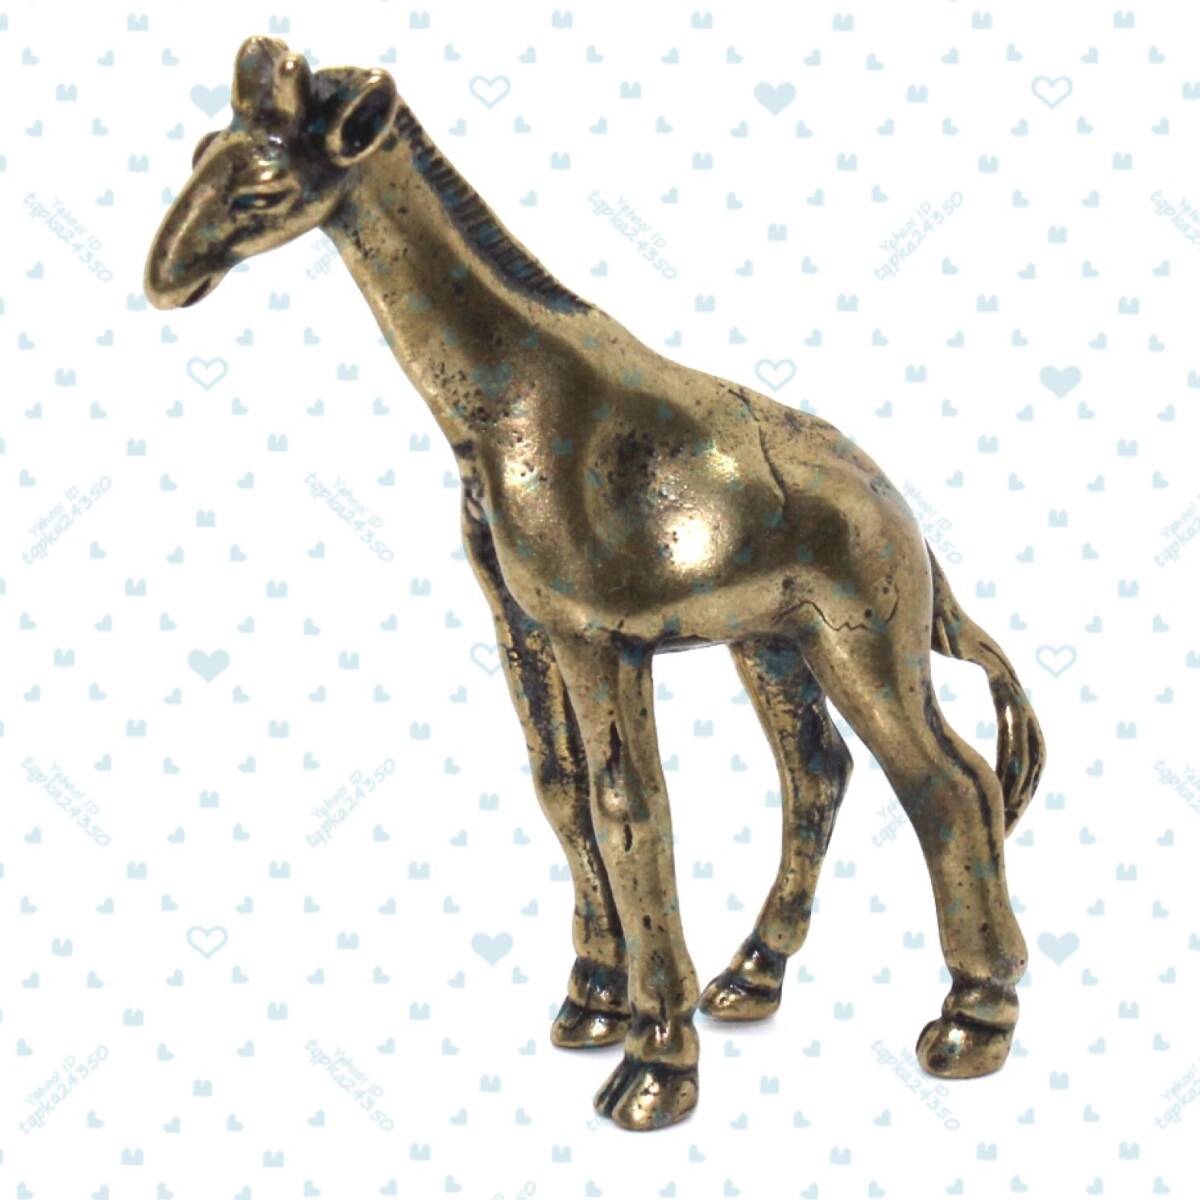 33g きりん キリン 動物 置物 生き物 置き物 床の間 机 飾り かわいい 可愛い おすすめ 人形 フィギュア ブロンズ 真鍮 金属 銅 gi33